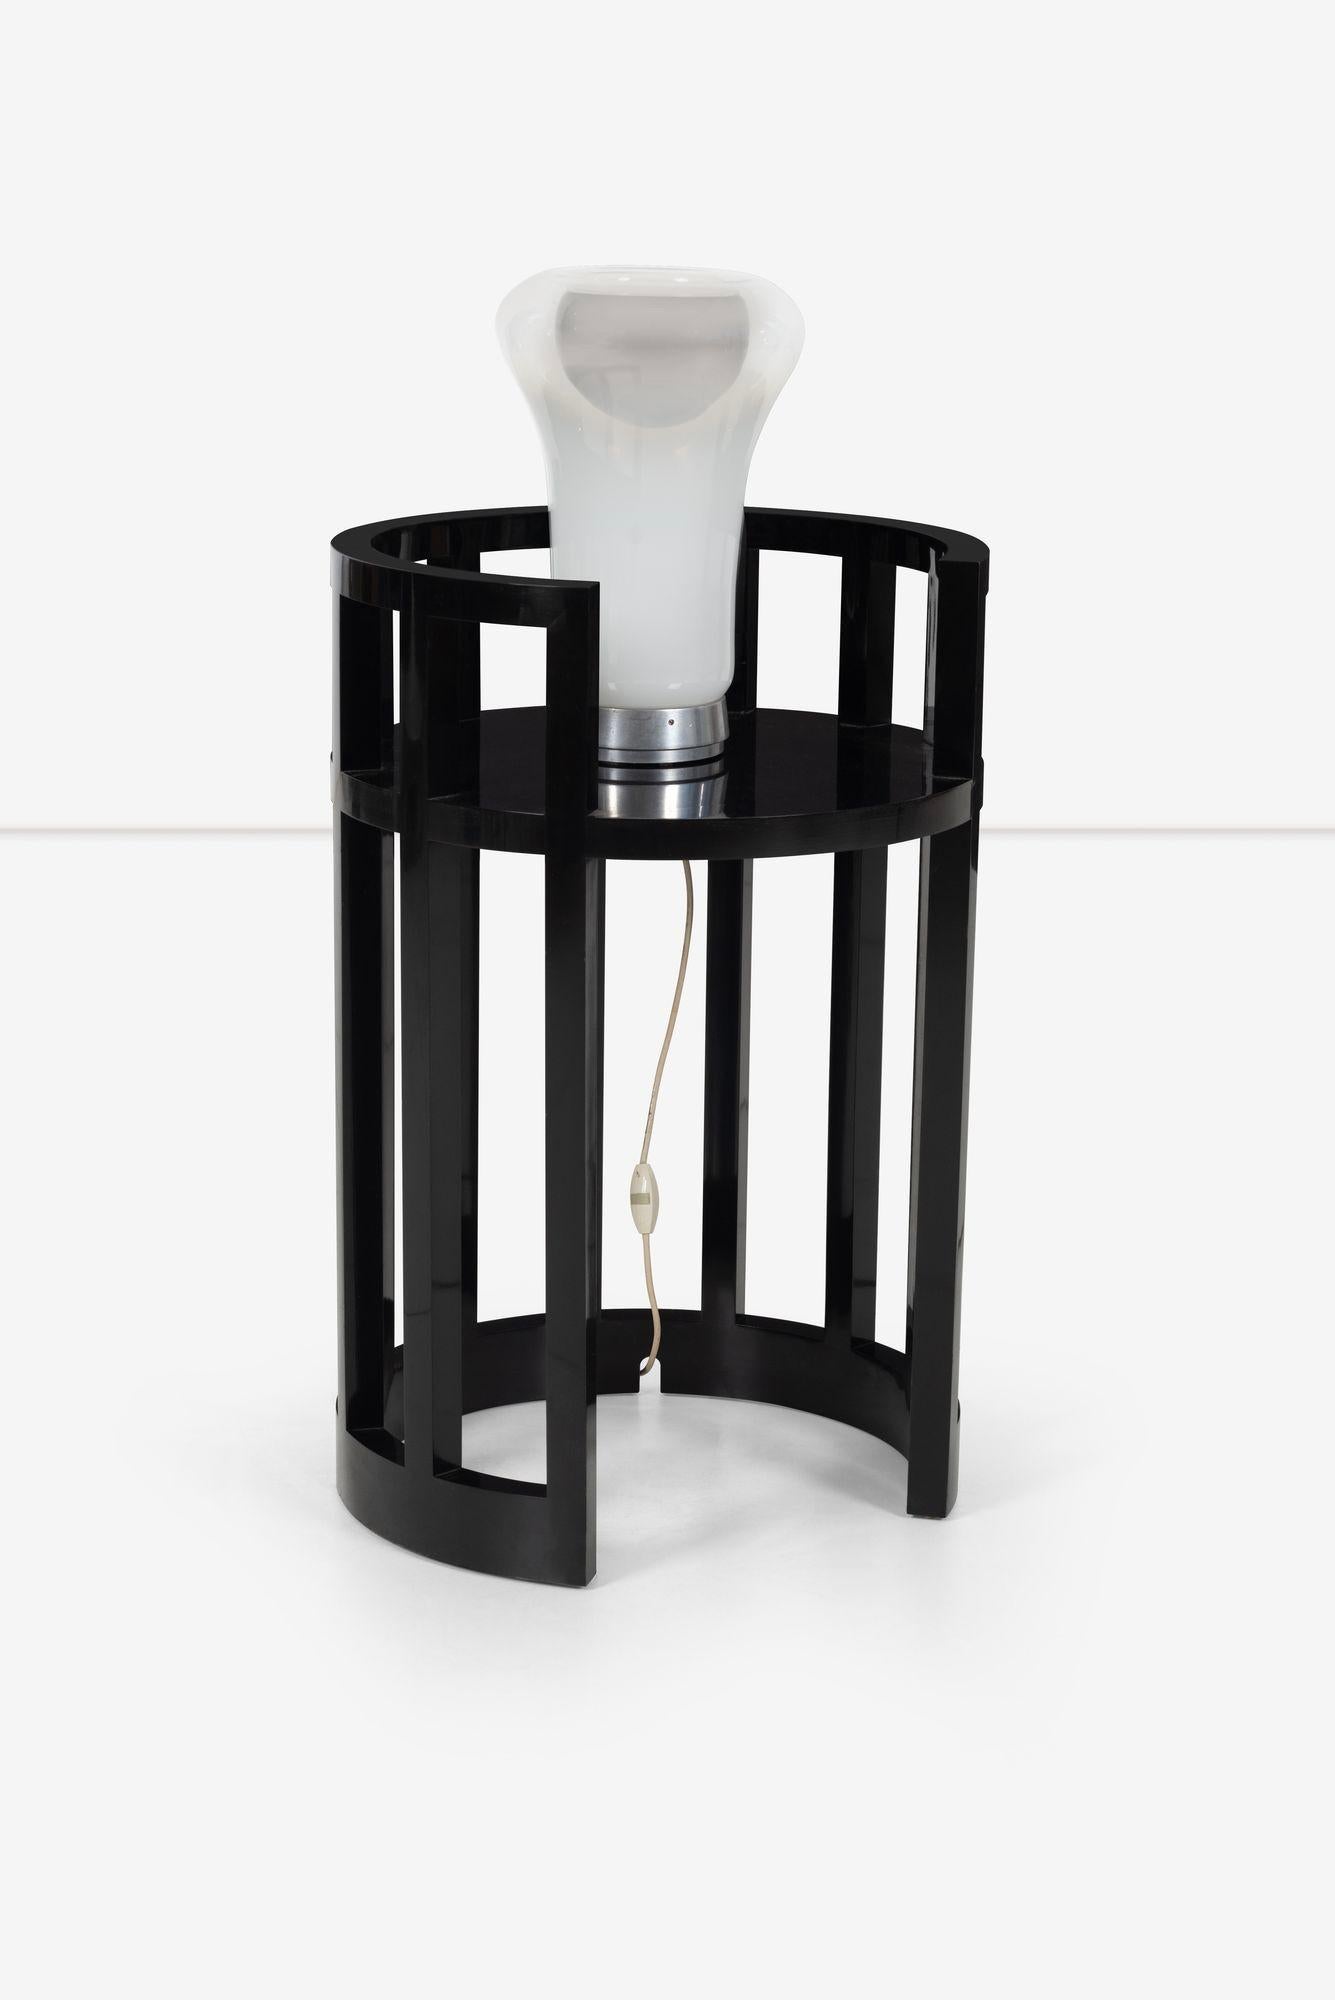 Lacquered Richard Meier Custom Lamp Table For Sale